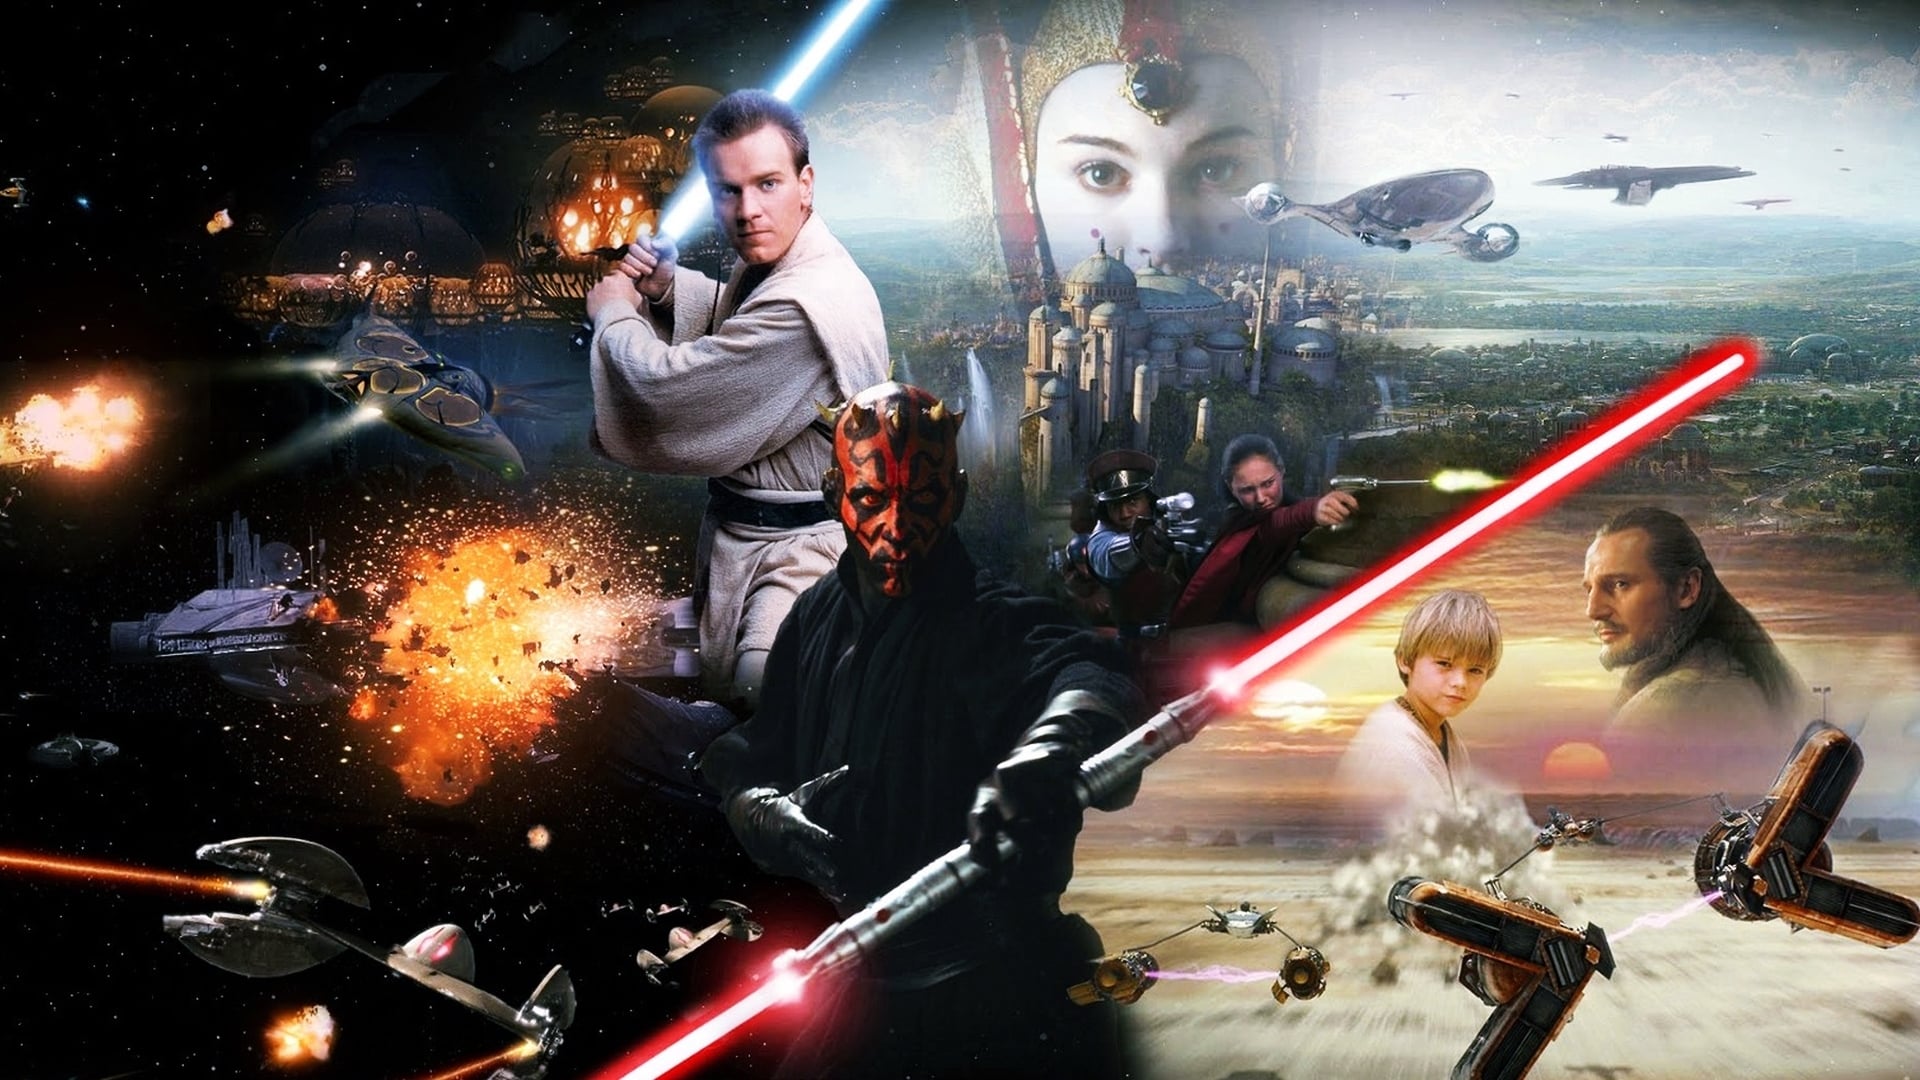 Las once películas de la saga Star Wars para ver de mejor a peor